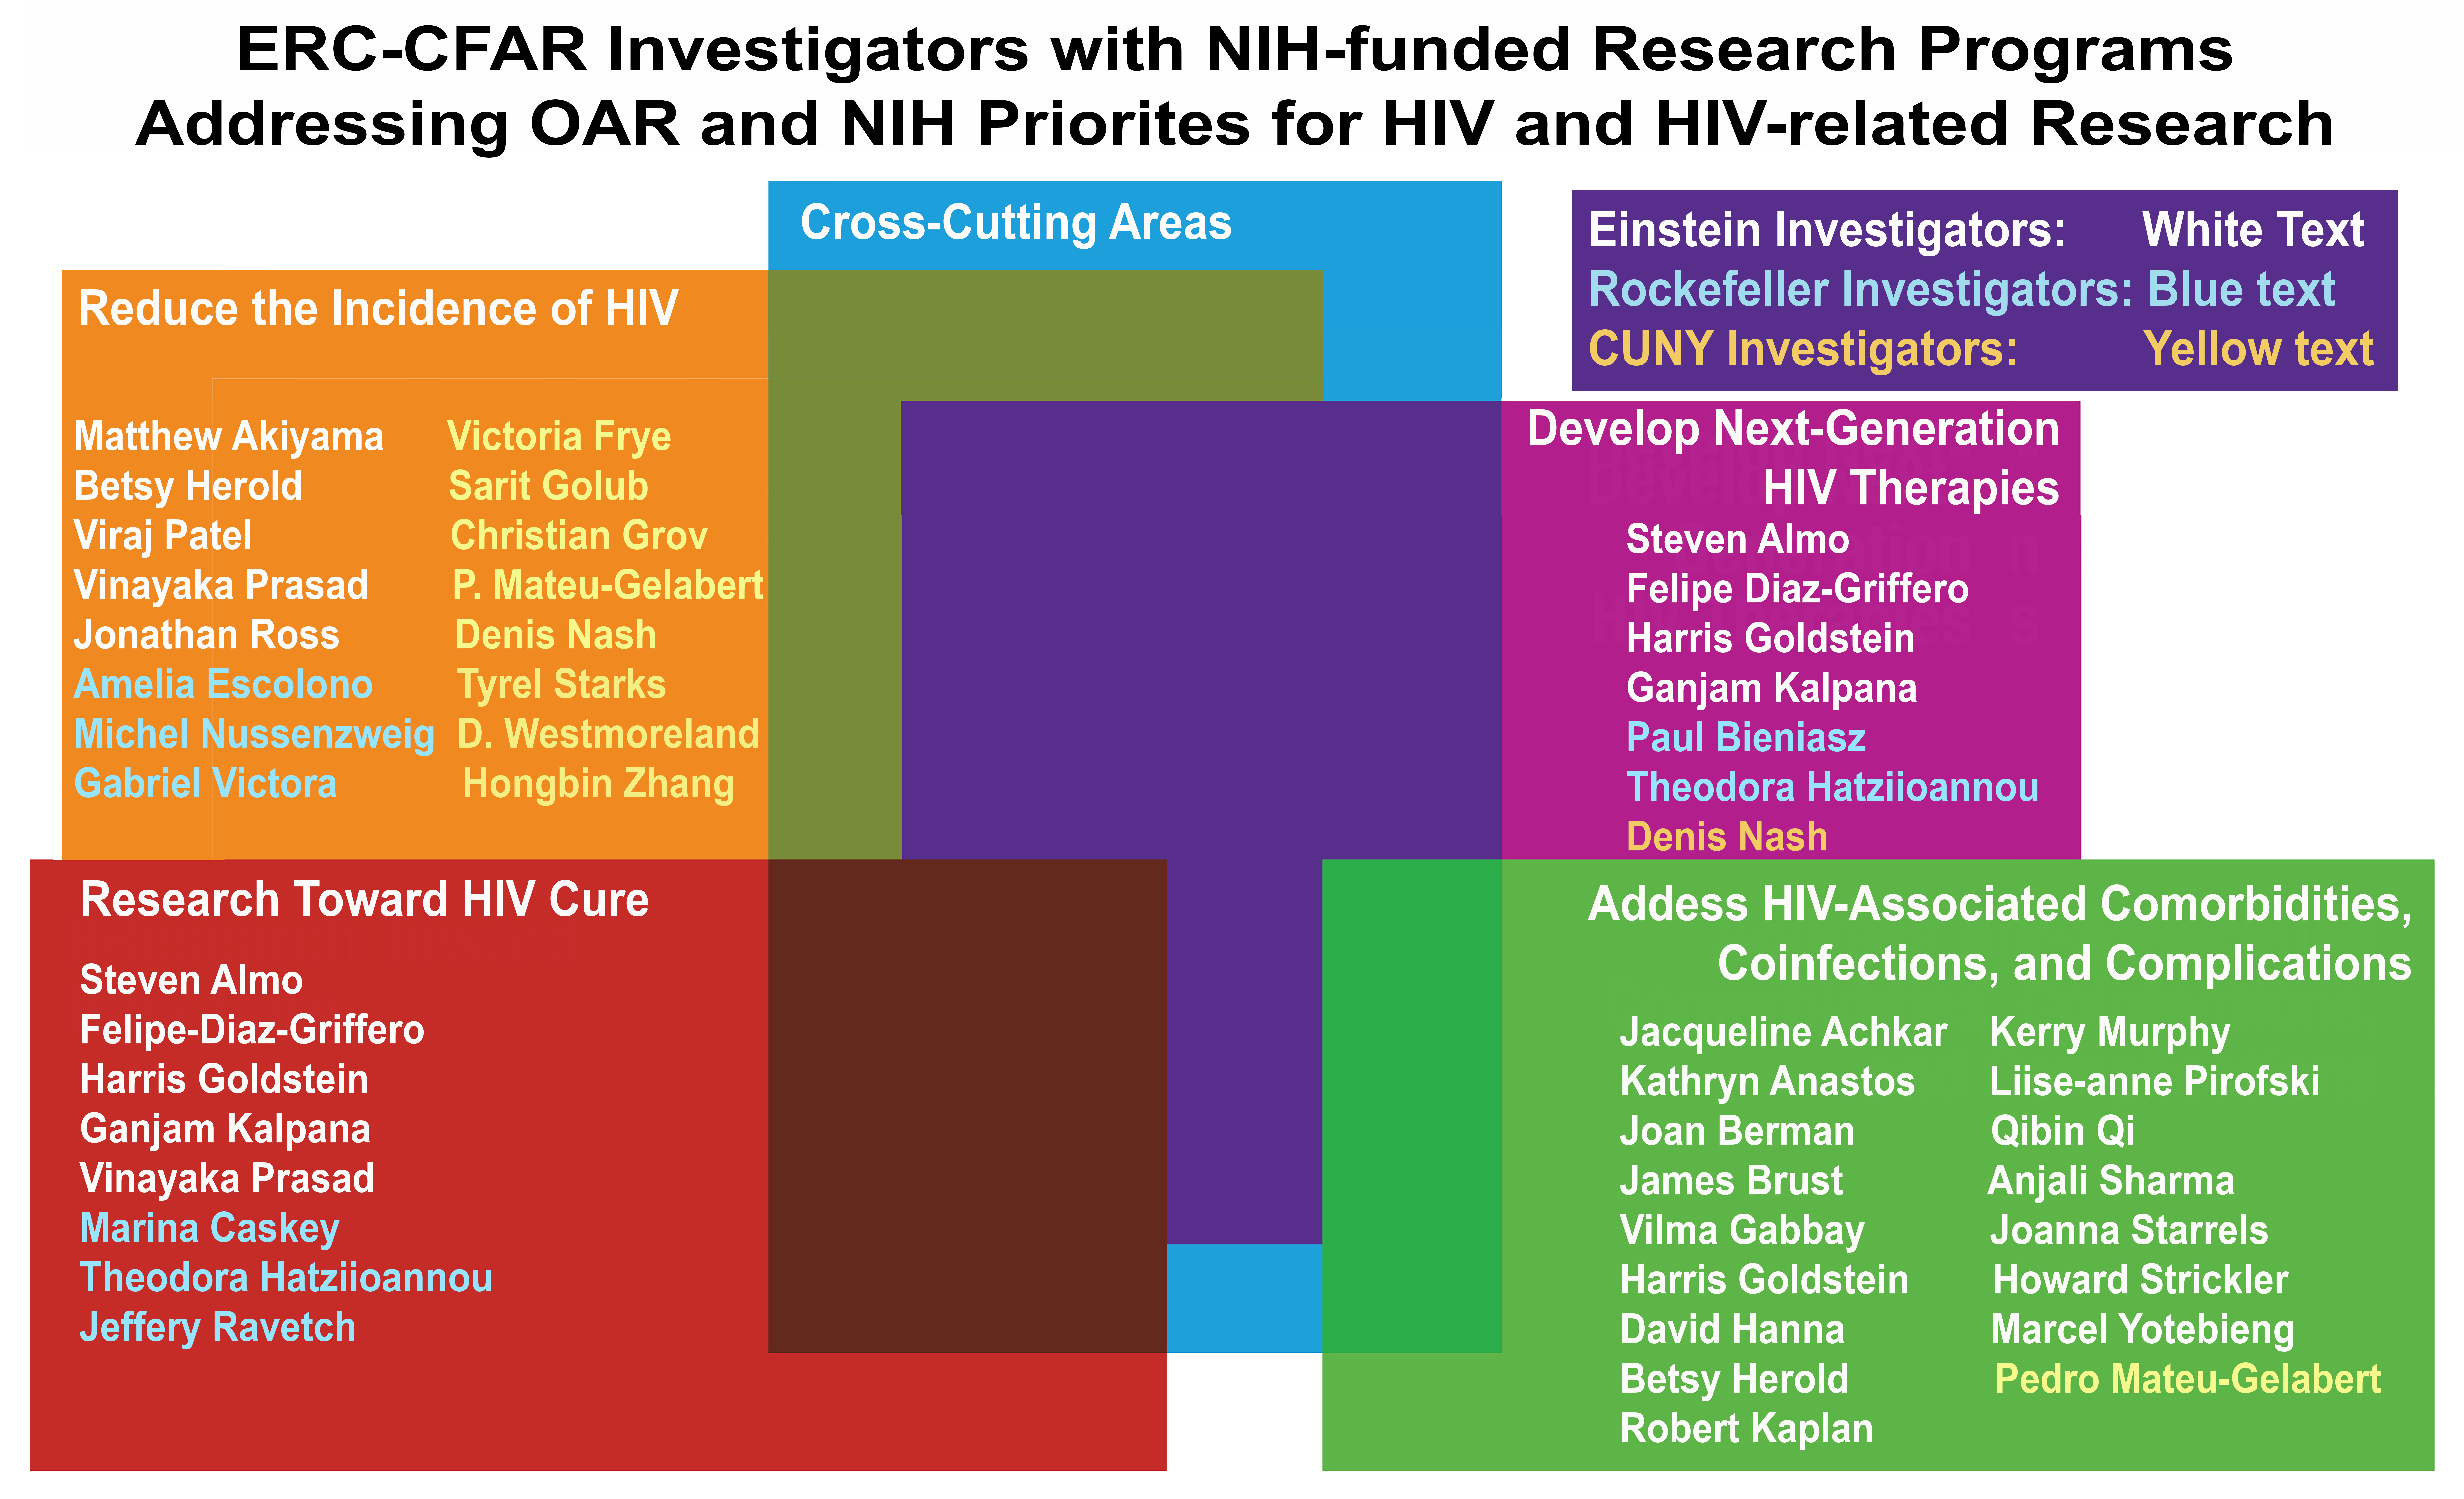 ERC-CFAR NIH Priorities